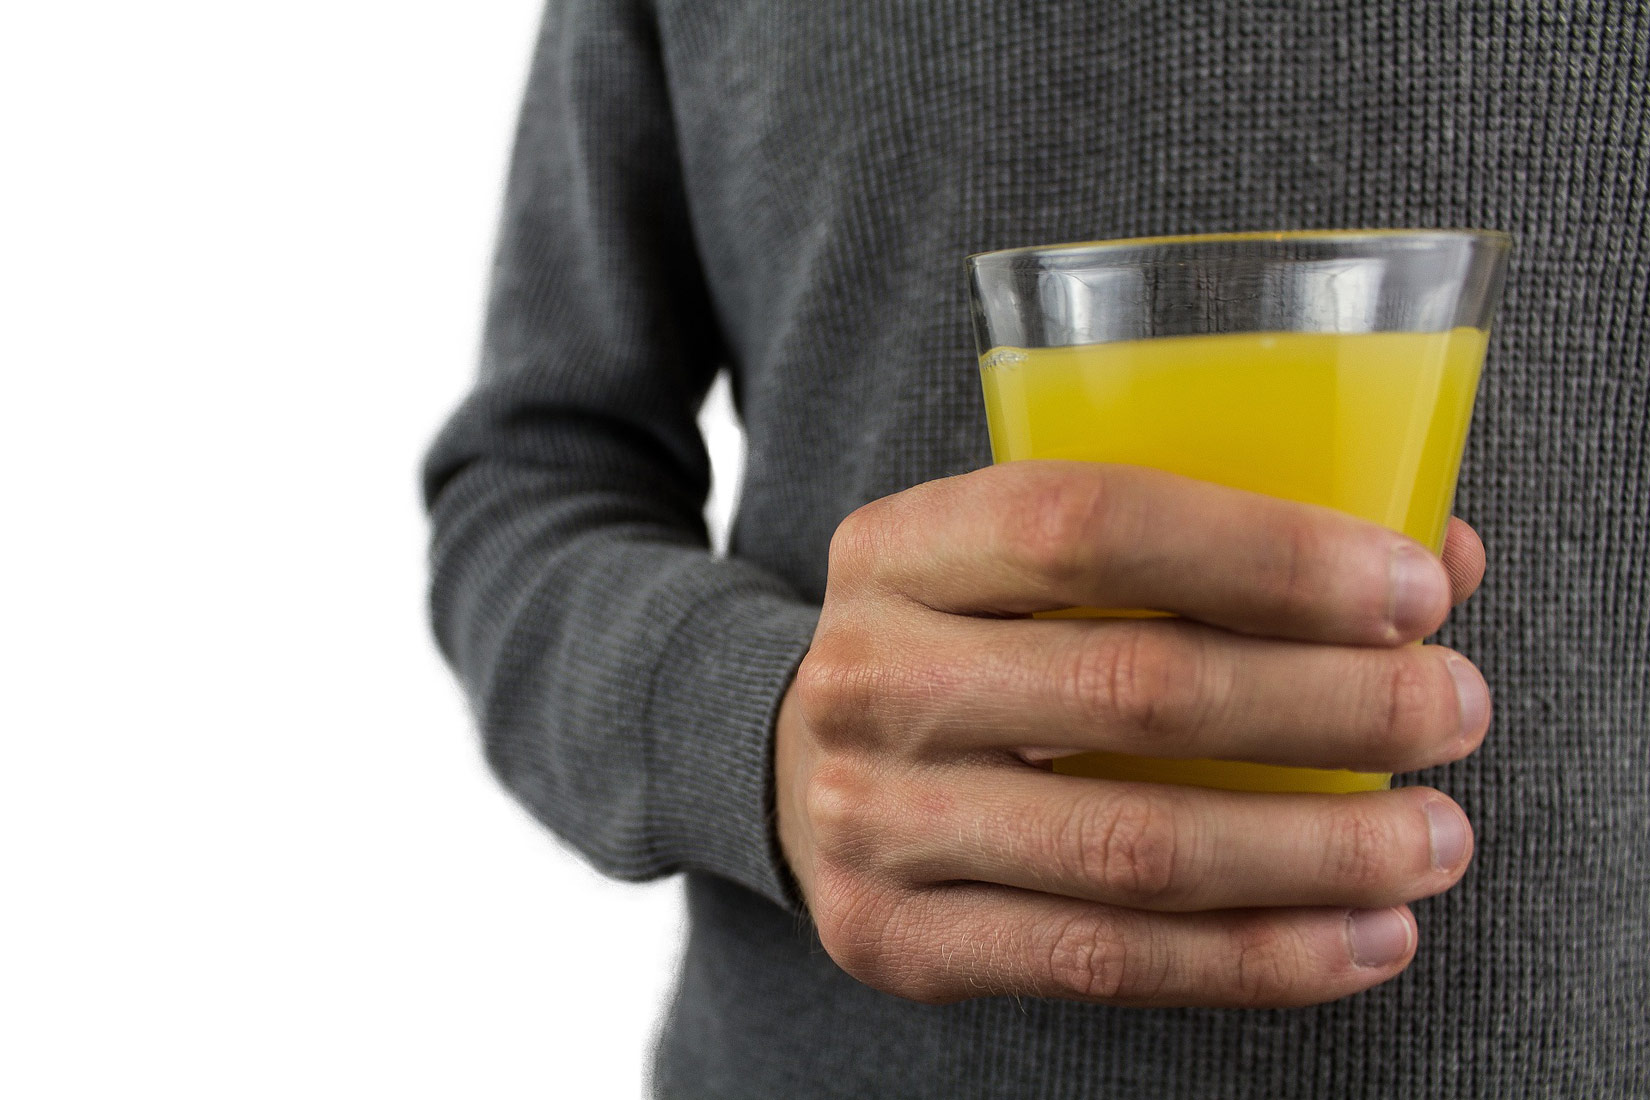 Fotografija prikazuje čašu žutog voćnog soka.